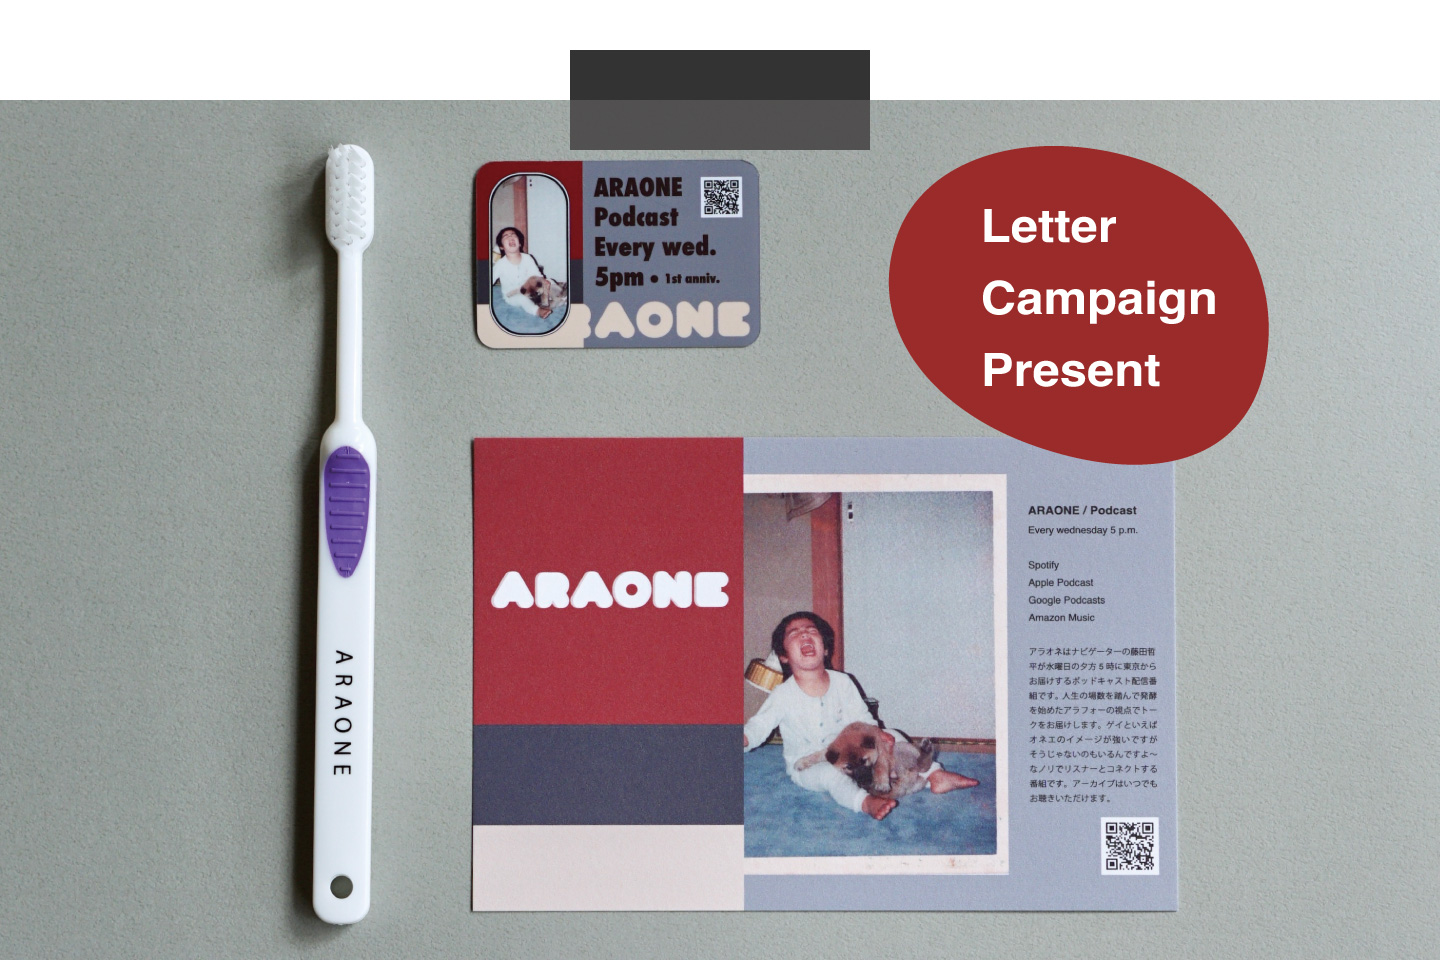 Letter Campaign | ARAONE